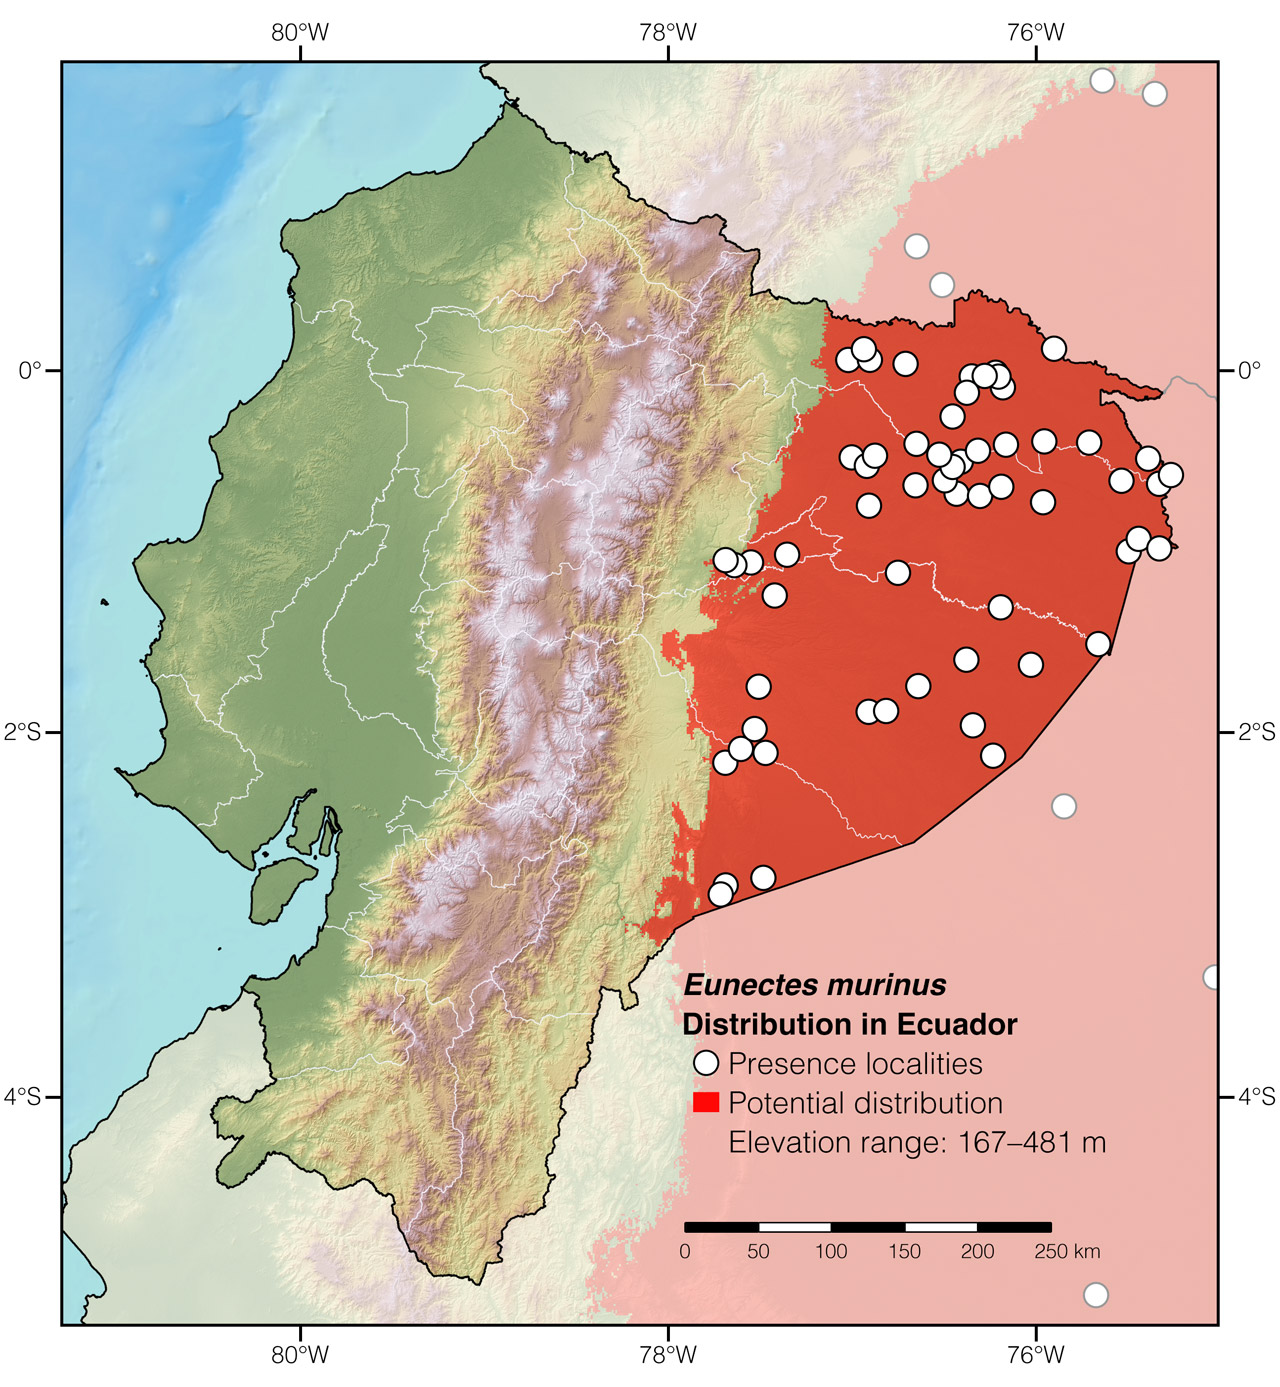 Distribution of Eunectes murinus in Ecuador